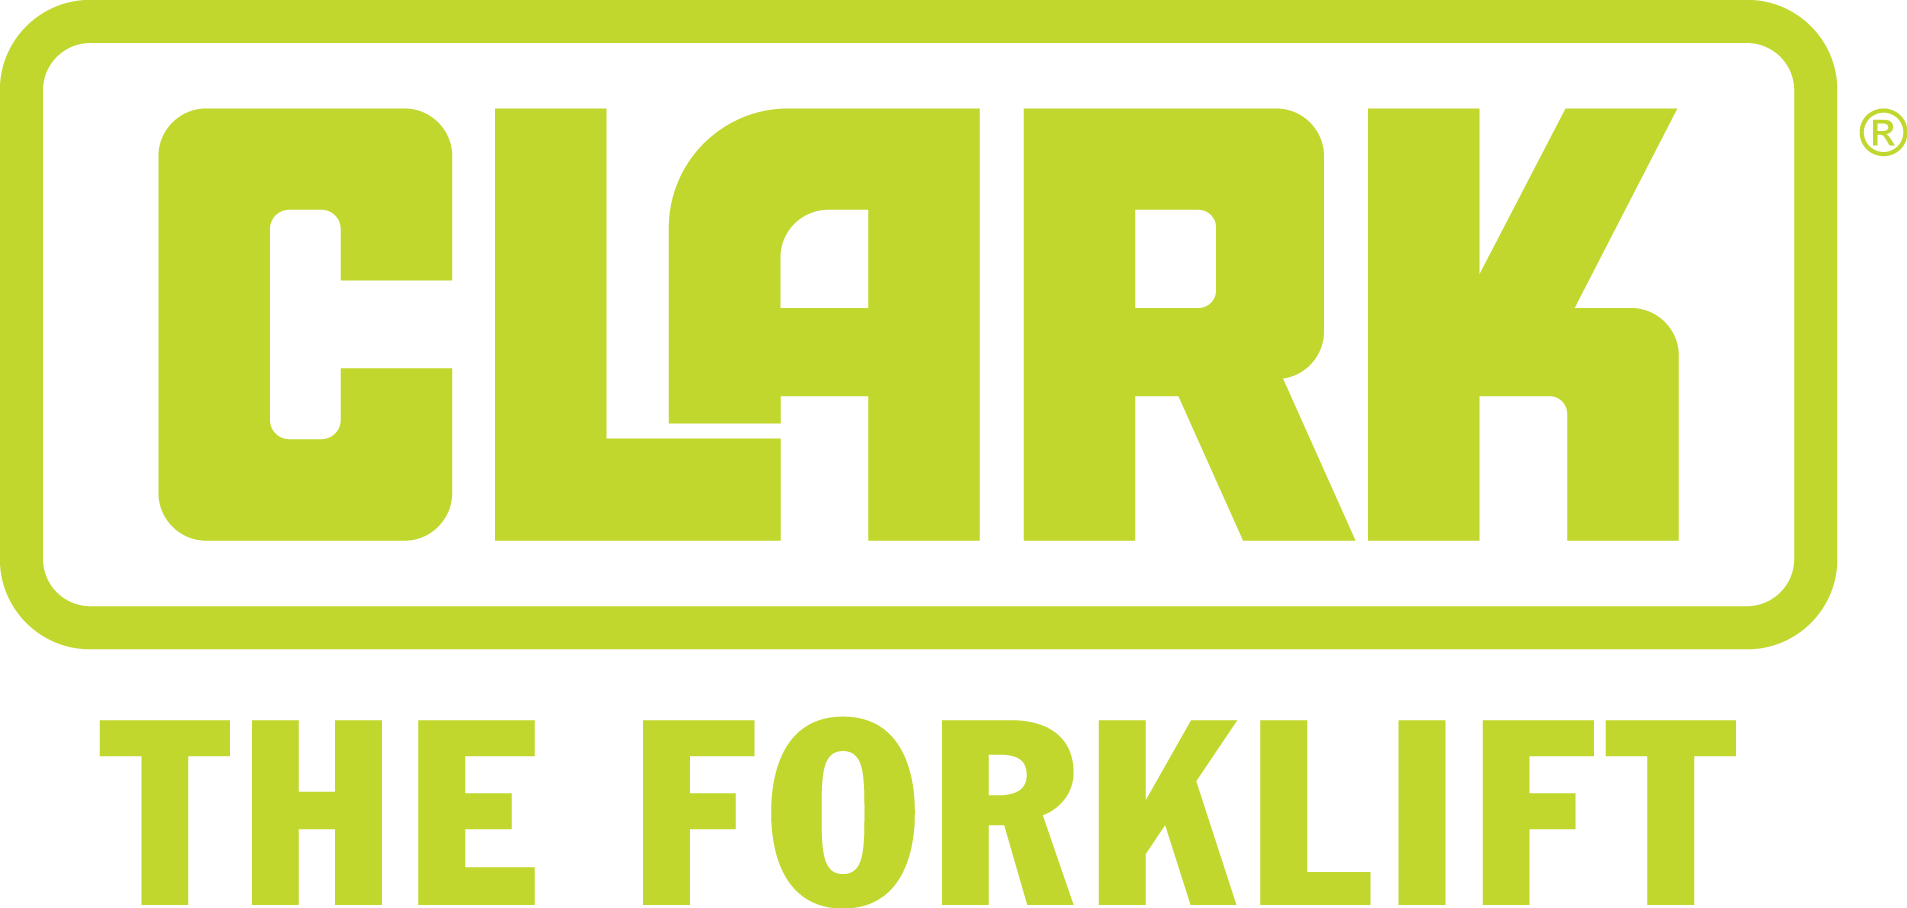 clark forklift logo